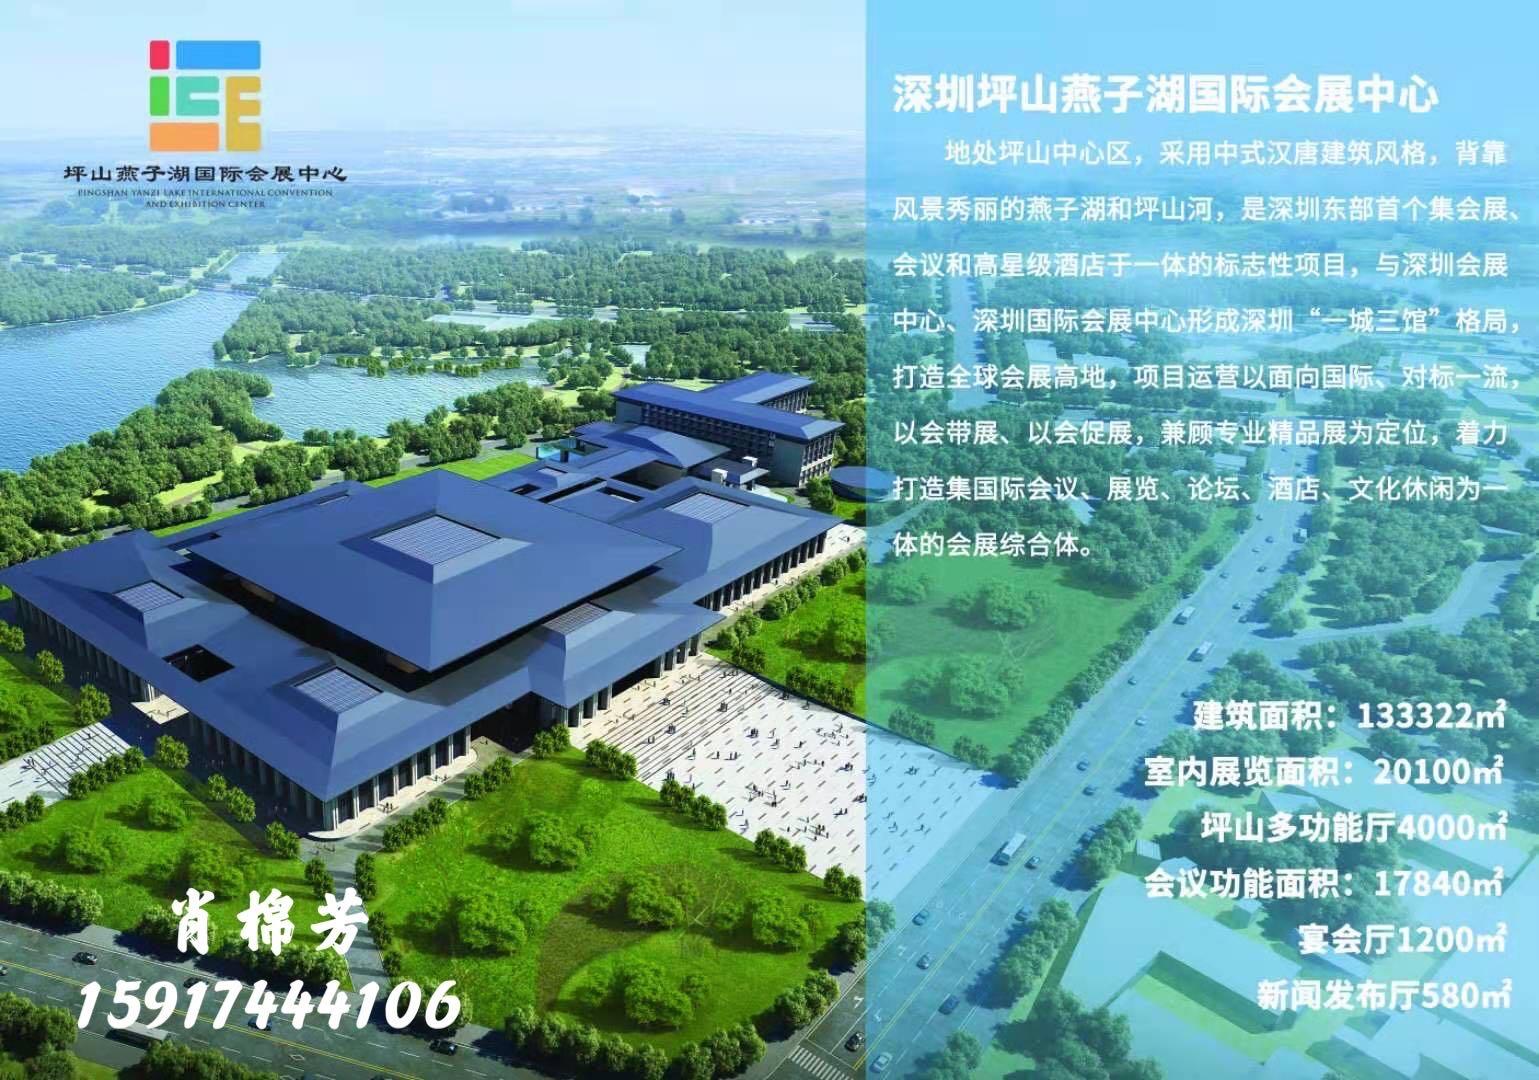 深圳会议展览中心最大容纳40000人的会议场地|深圳市坪山燕子湖国际会展中心的价格与联系方式